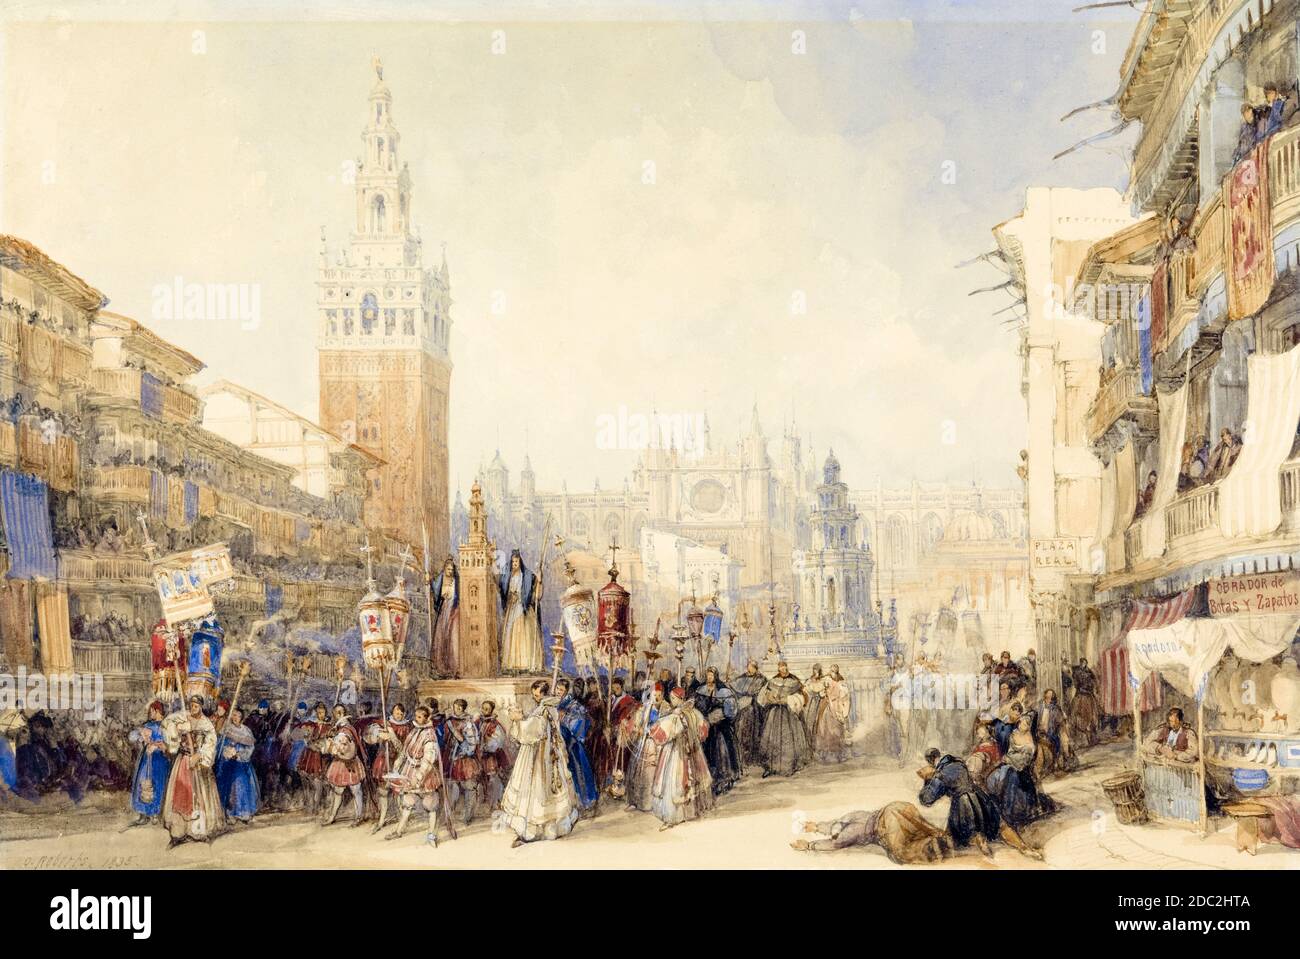 Plaza Real und Prozession des Fronleichnams in Sevilla, Spanien, Gemälde von David Roberts, 1836 Stockfoto